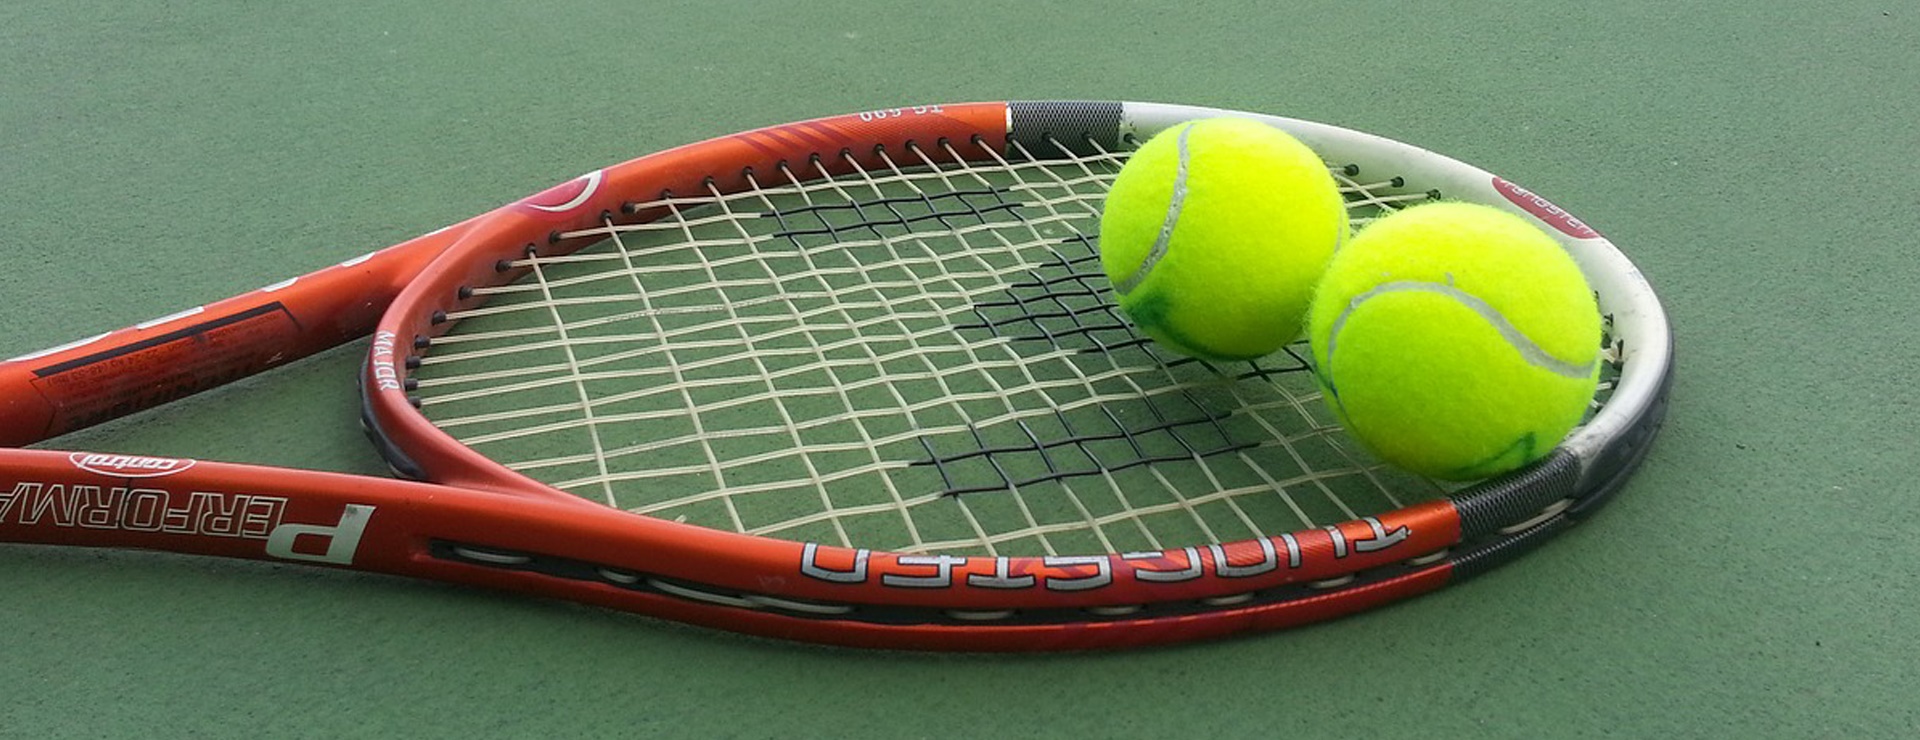 زمین تنیس مجموعه پیام ویژه بازی یا آموزش تنیس همراه با مربی در مجموعه ورزشی پیام با ۷۳درصد تخفیف